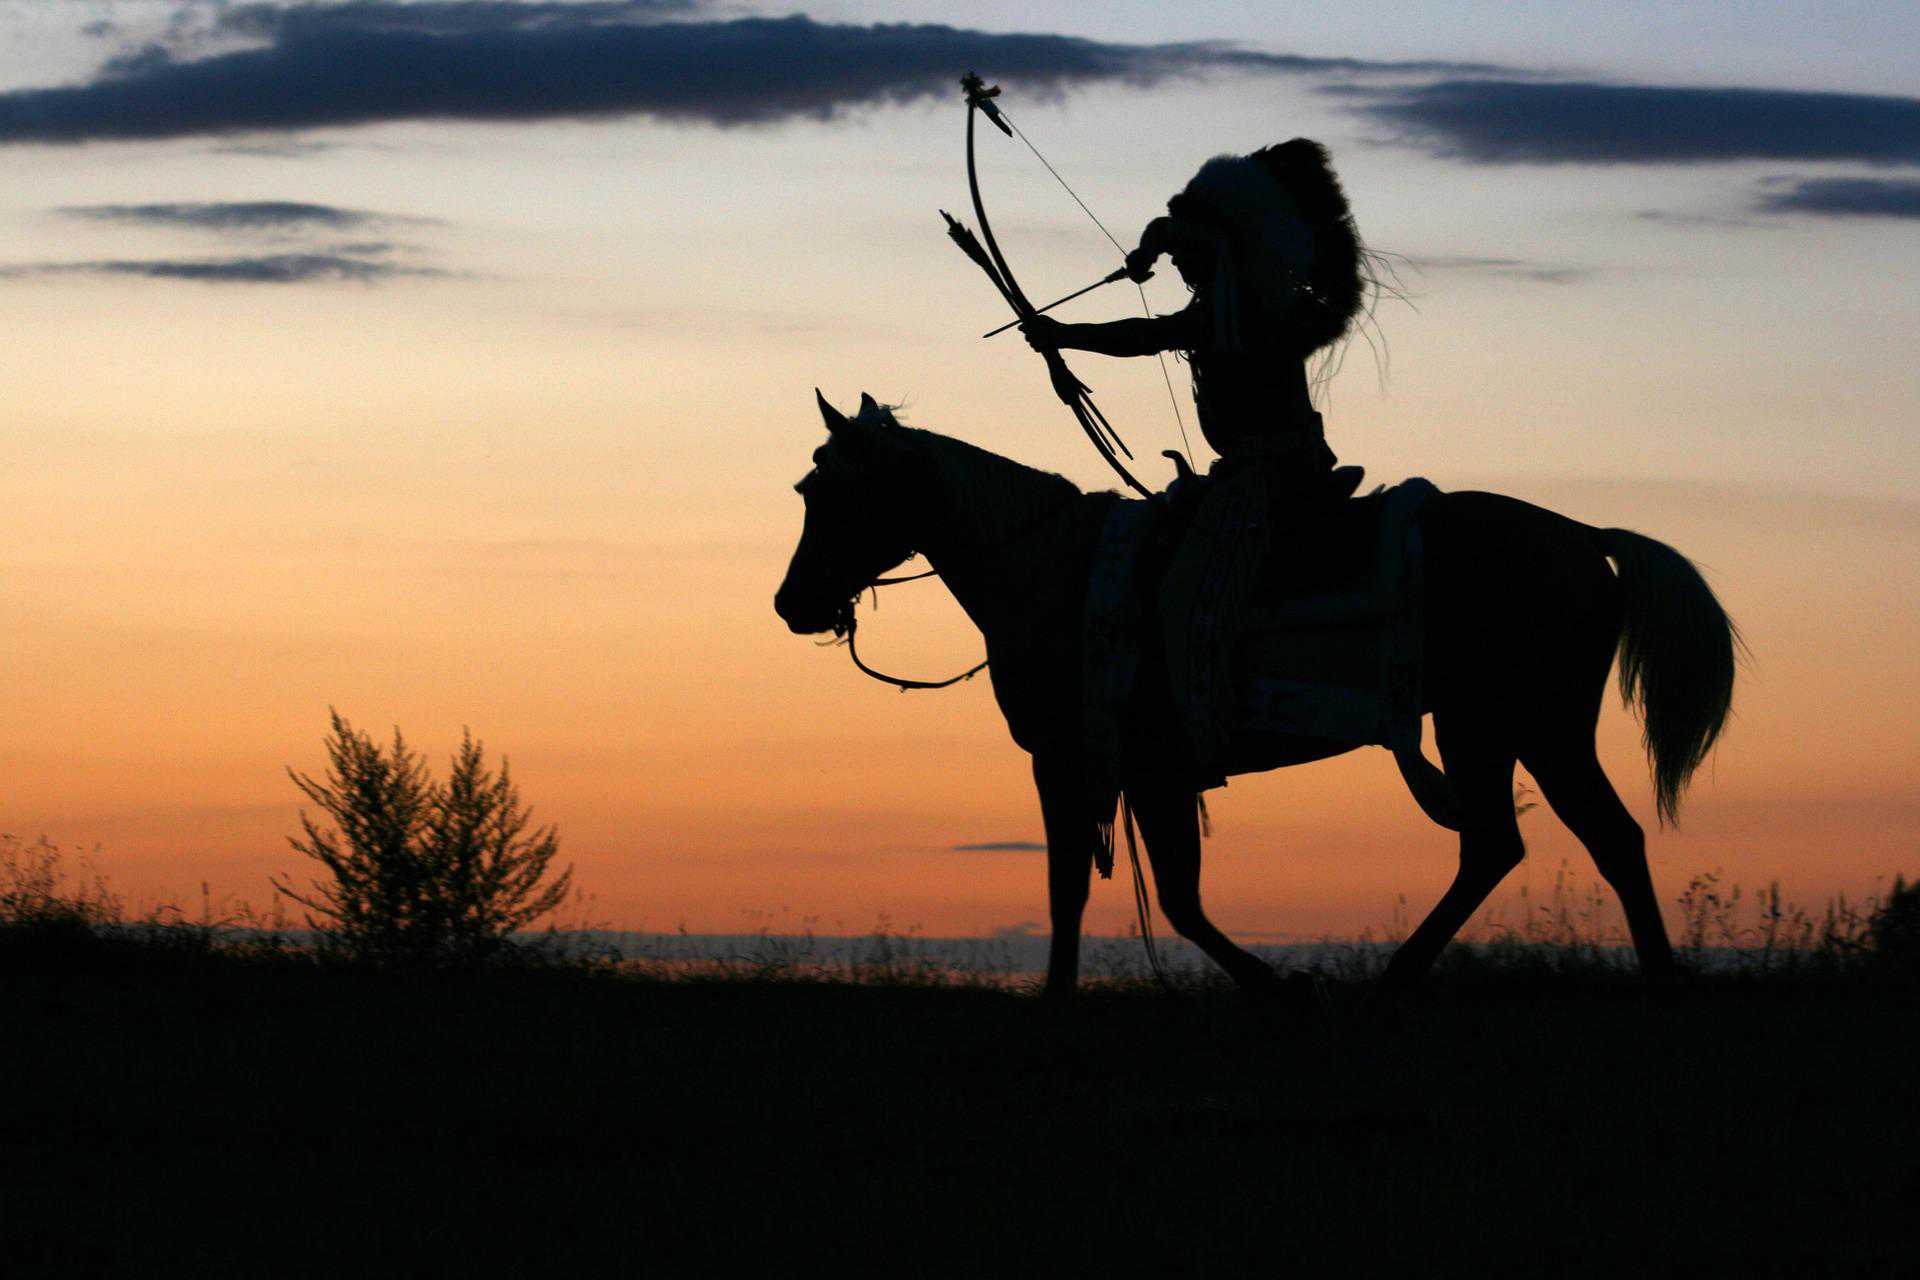 Western-Show-Motiv, Reiter auf einem Pferd mit Bogen im Sonnenuntergang. Foto:Tomasz Proszek via Pixabay